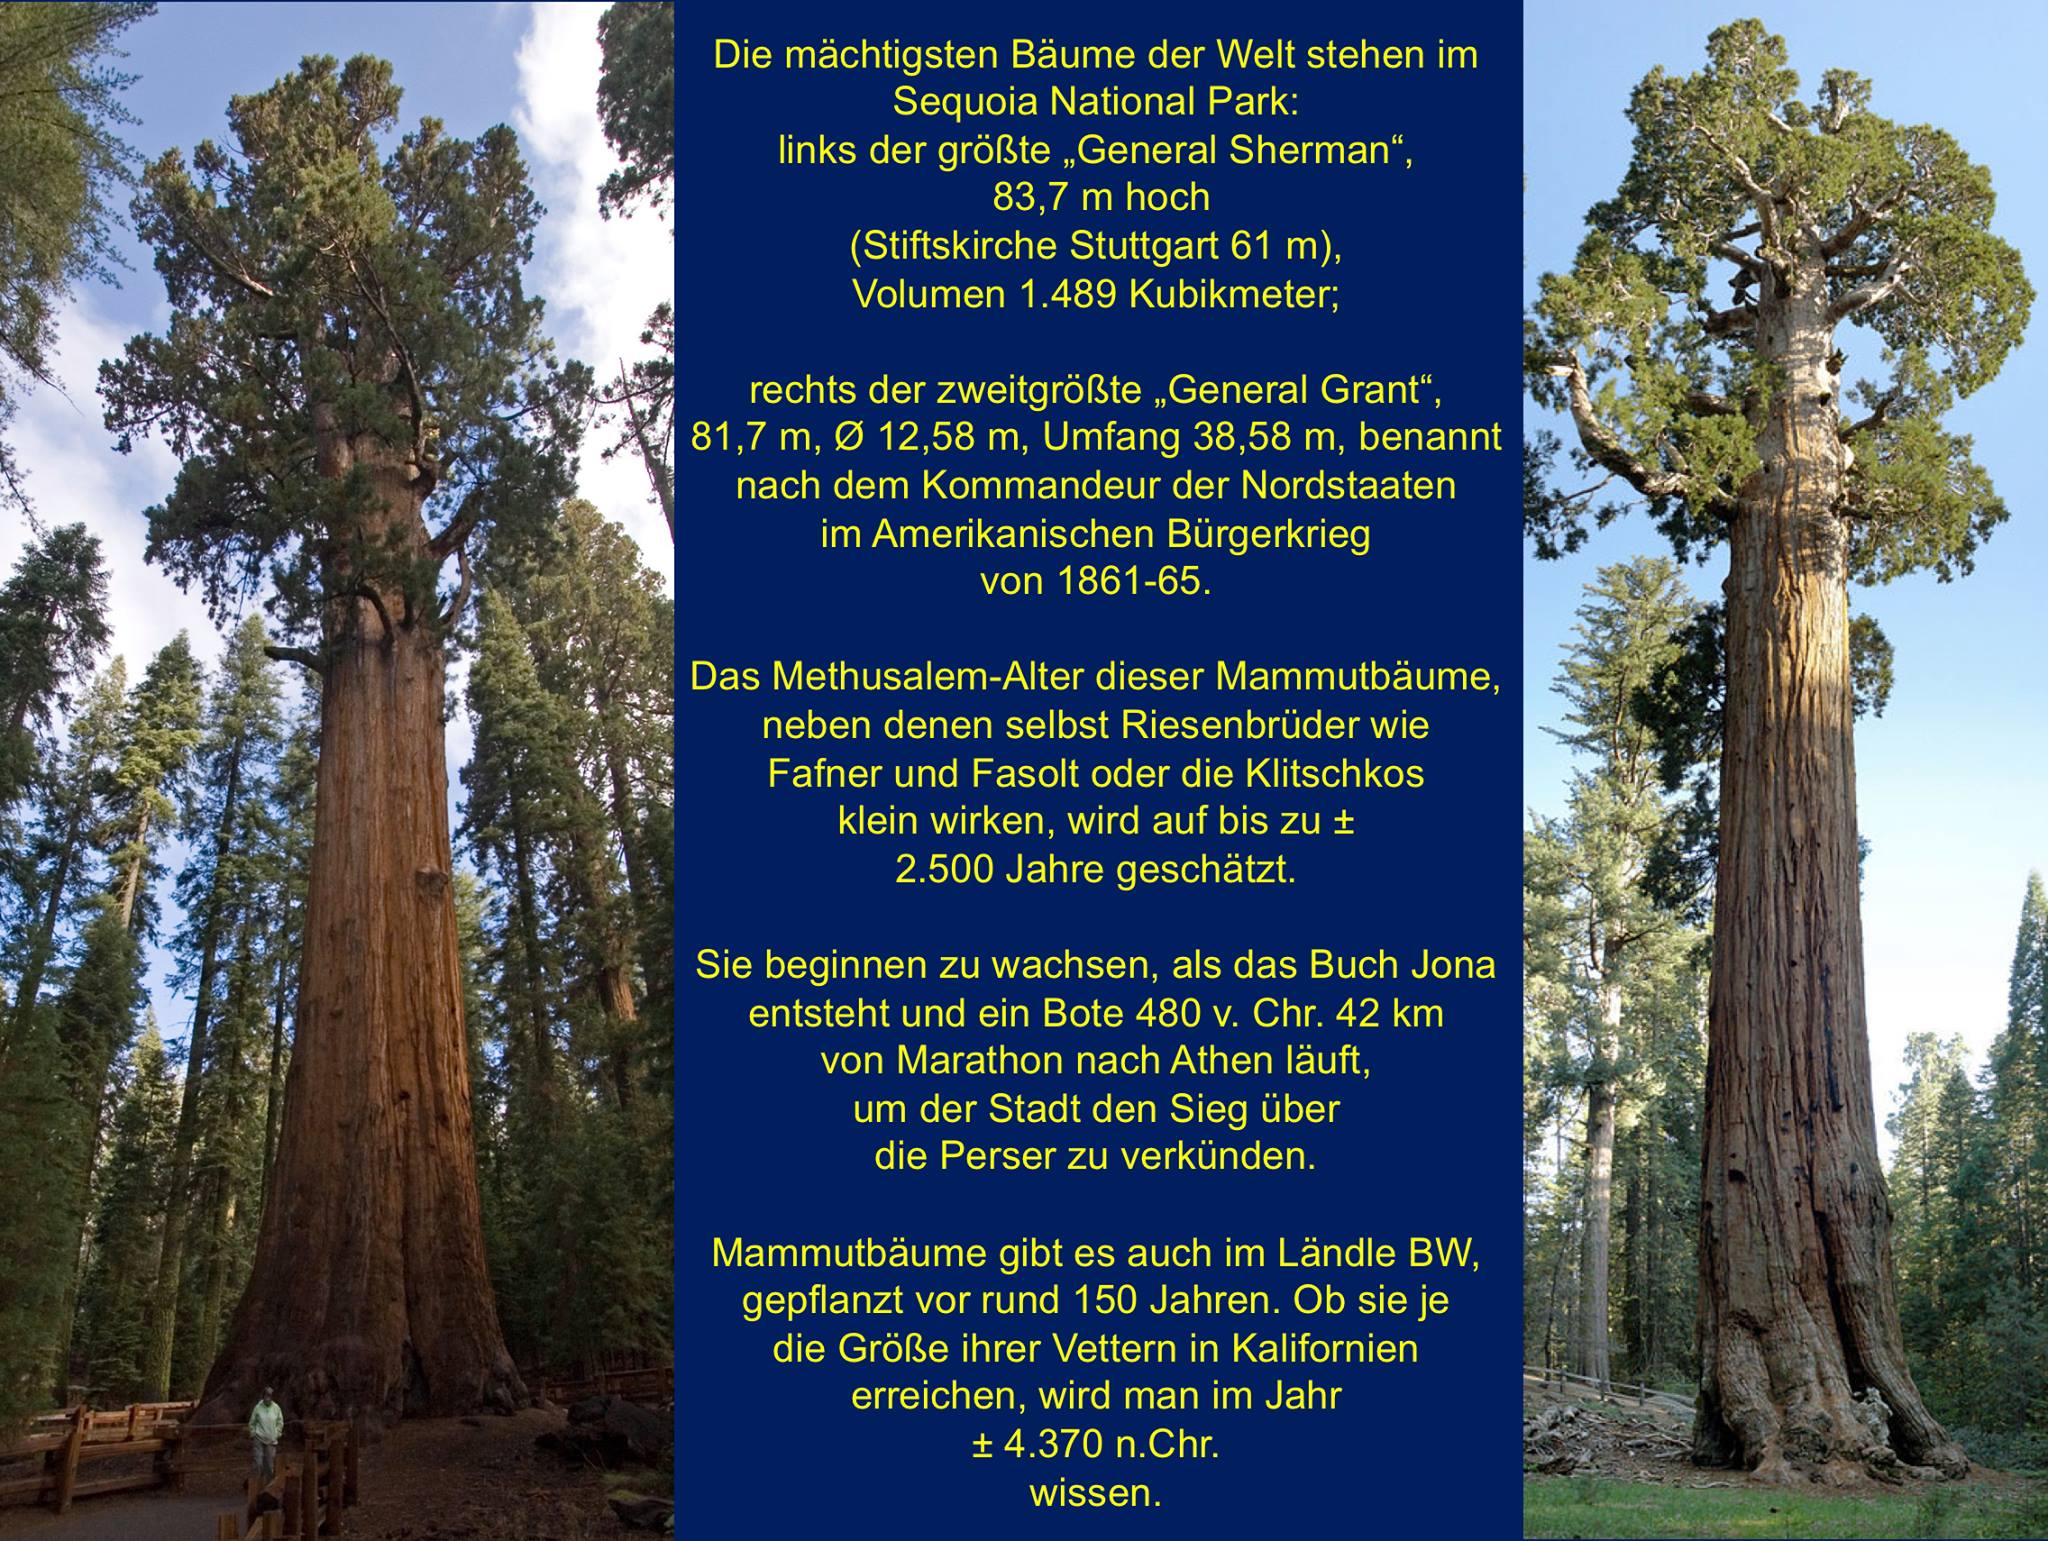 Buchsdinos und weitere Naturriesen – Sequoia National Park: Mammutbäume nach den Gegnern im Unabhängigkeitskrieg benannt